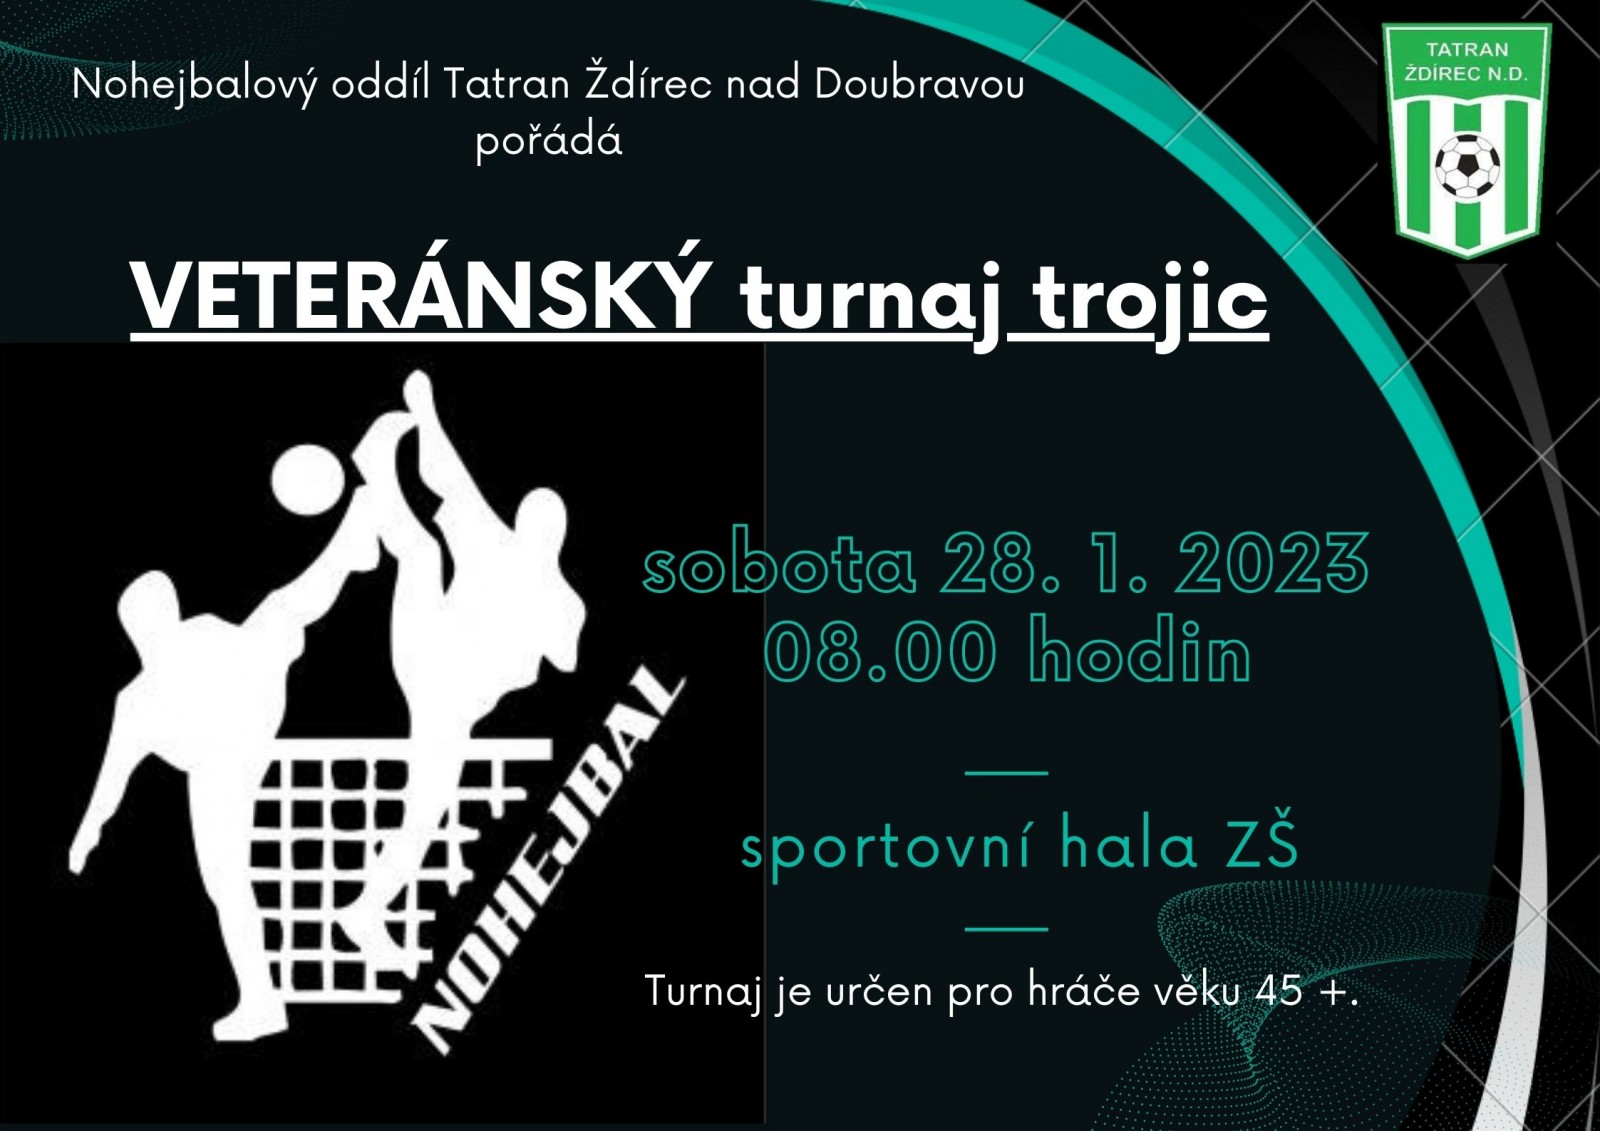 Veteransky-turnaj-trojic-plakat